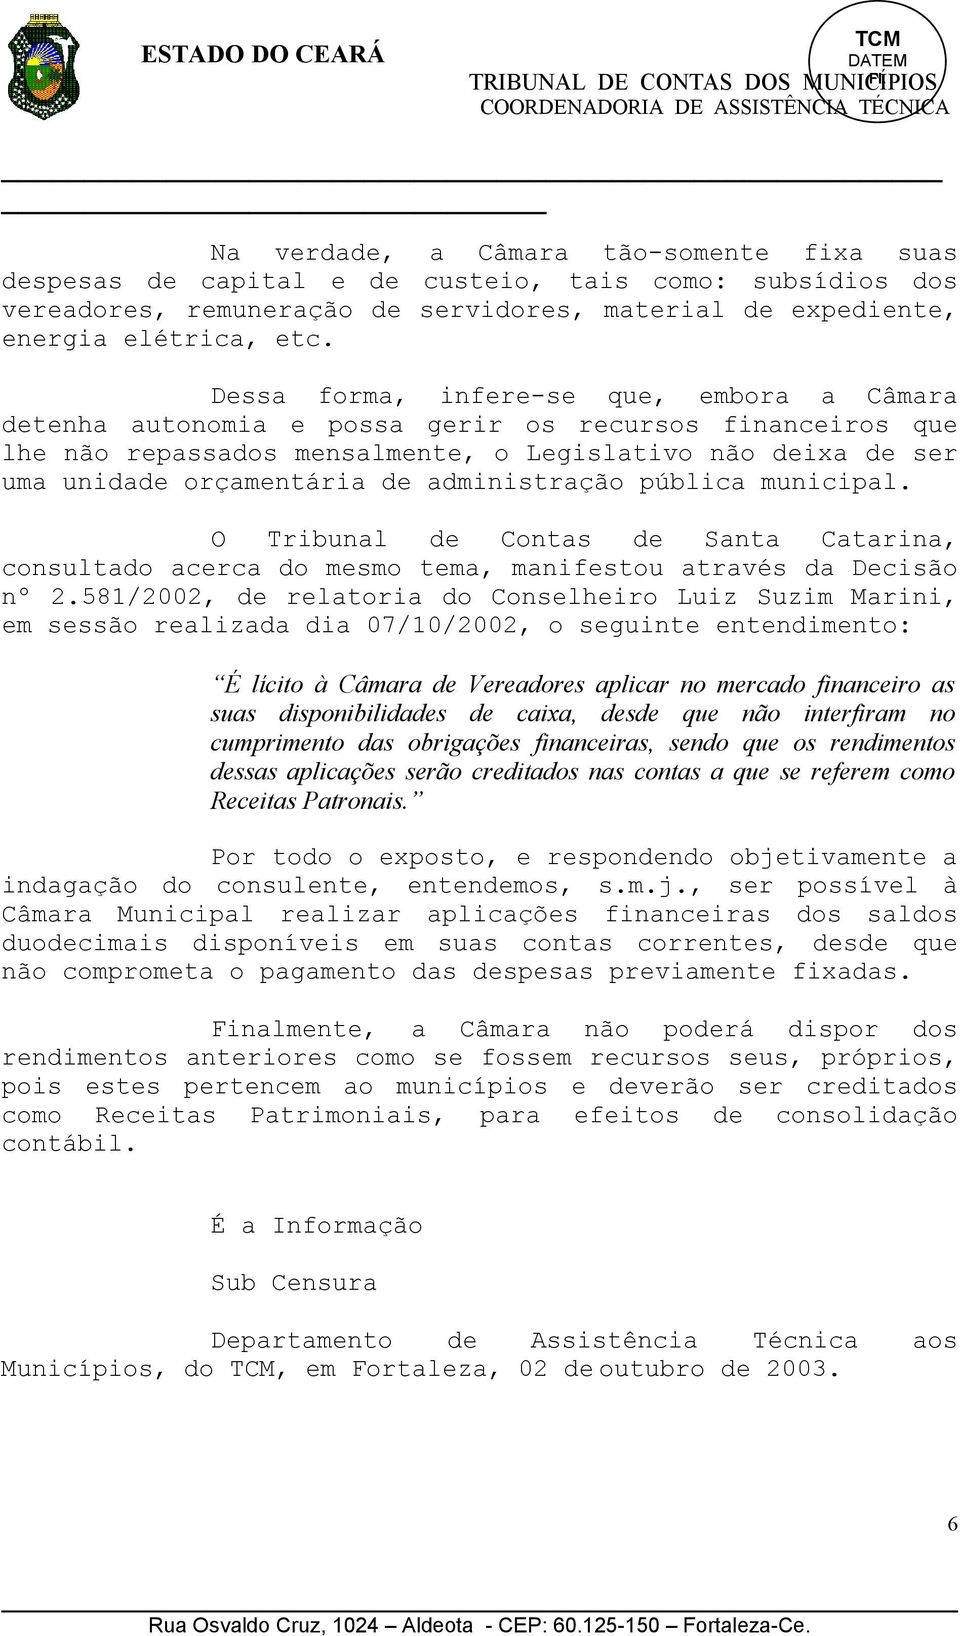 administração pública municipal. O Tribunal de Contas de Santa Catarina, consultado acerca do mesmo tema, manifestou através da Decisão nº 2.